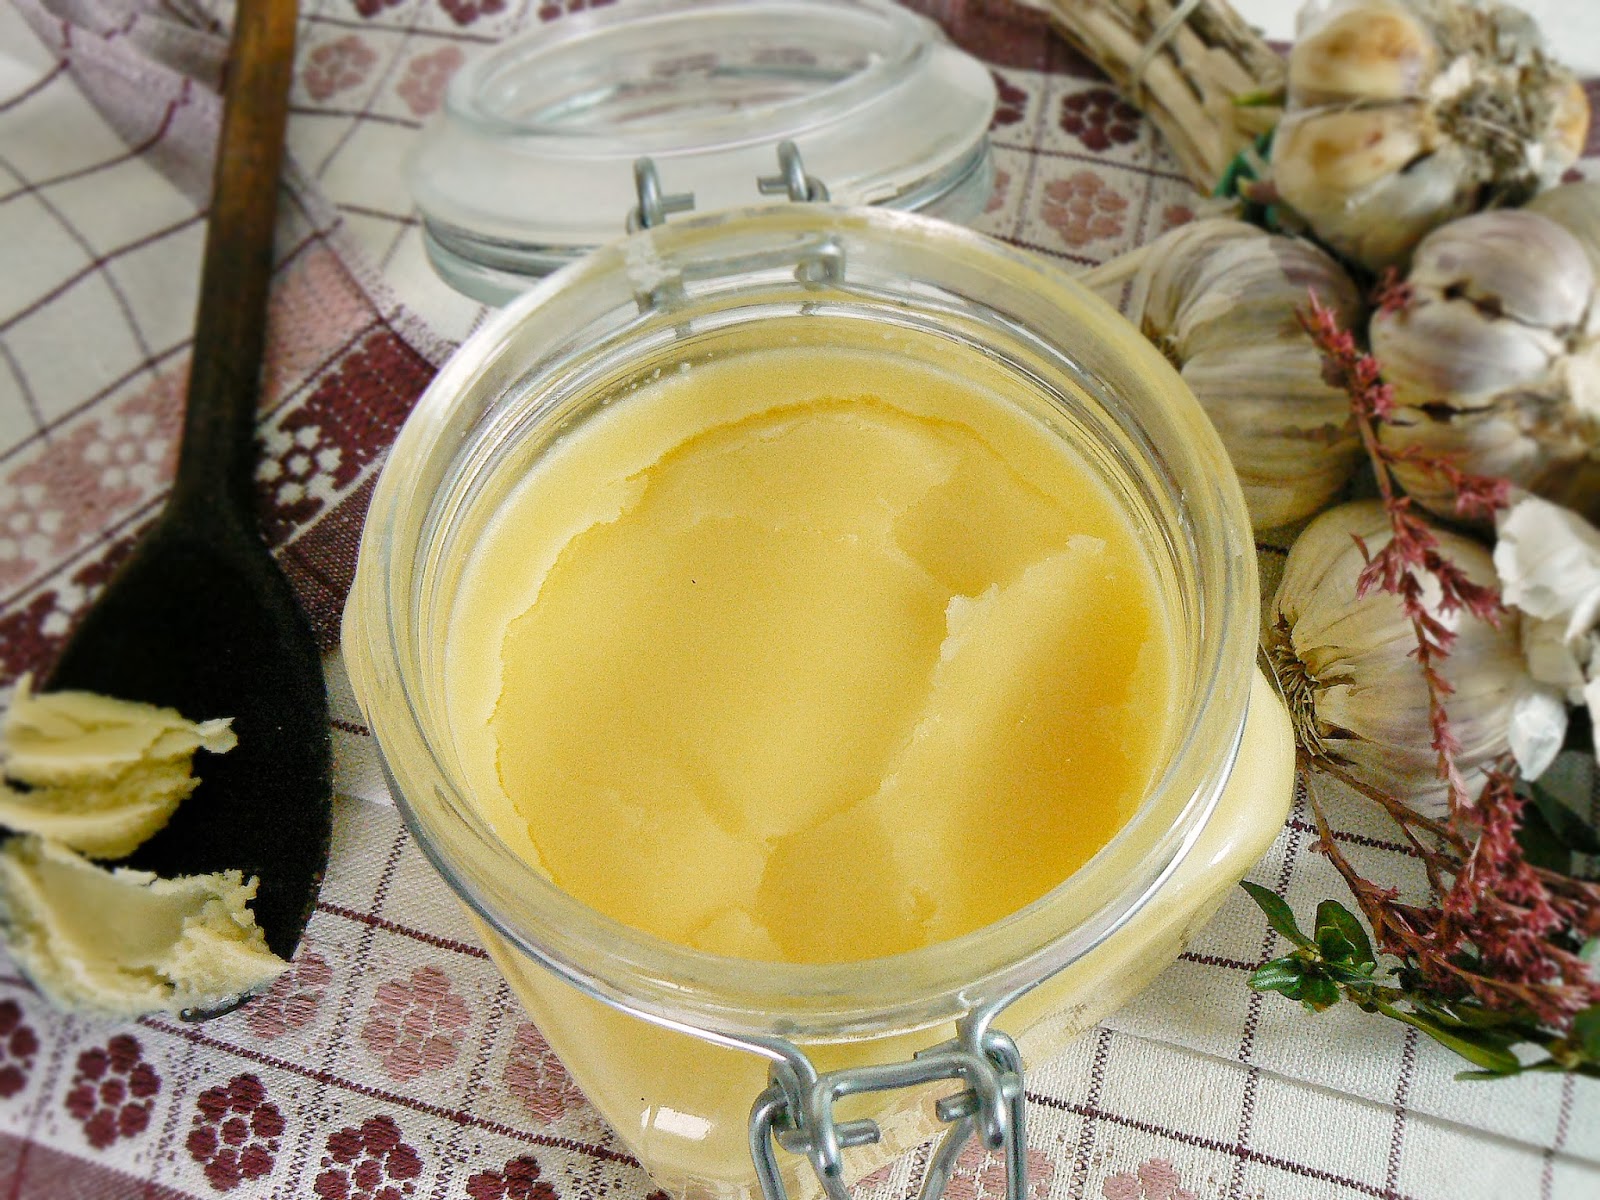 Jak zrobić domowe masło